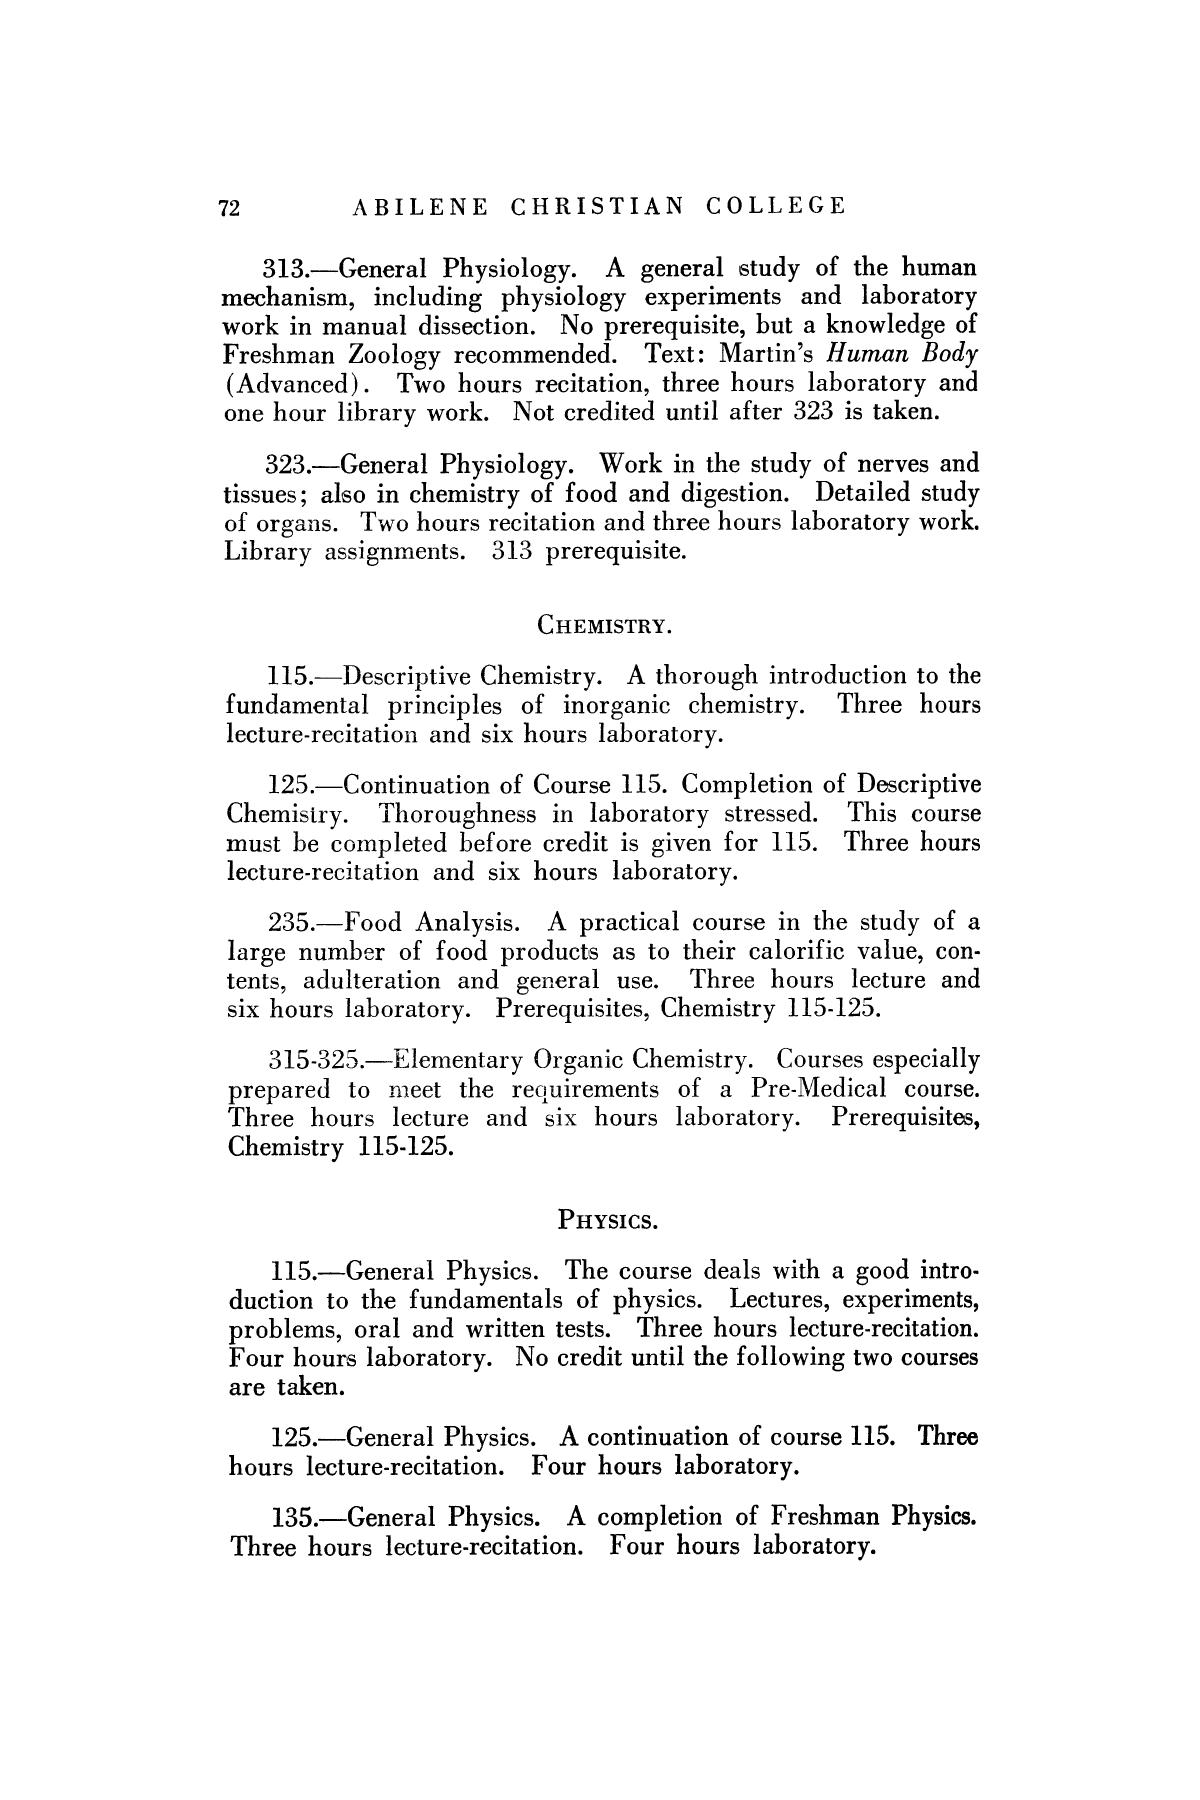 Catalog of Abilene Christian College, 1925-1926
                                                
                                                    72
                                                